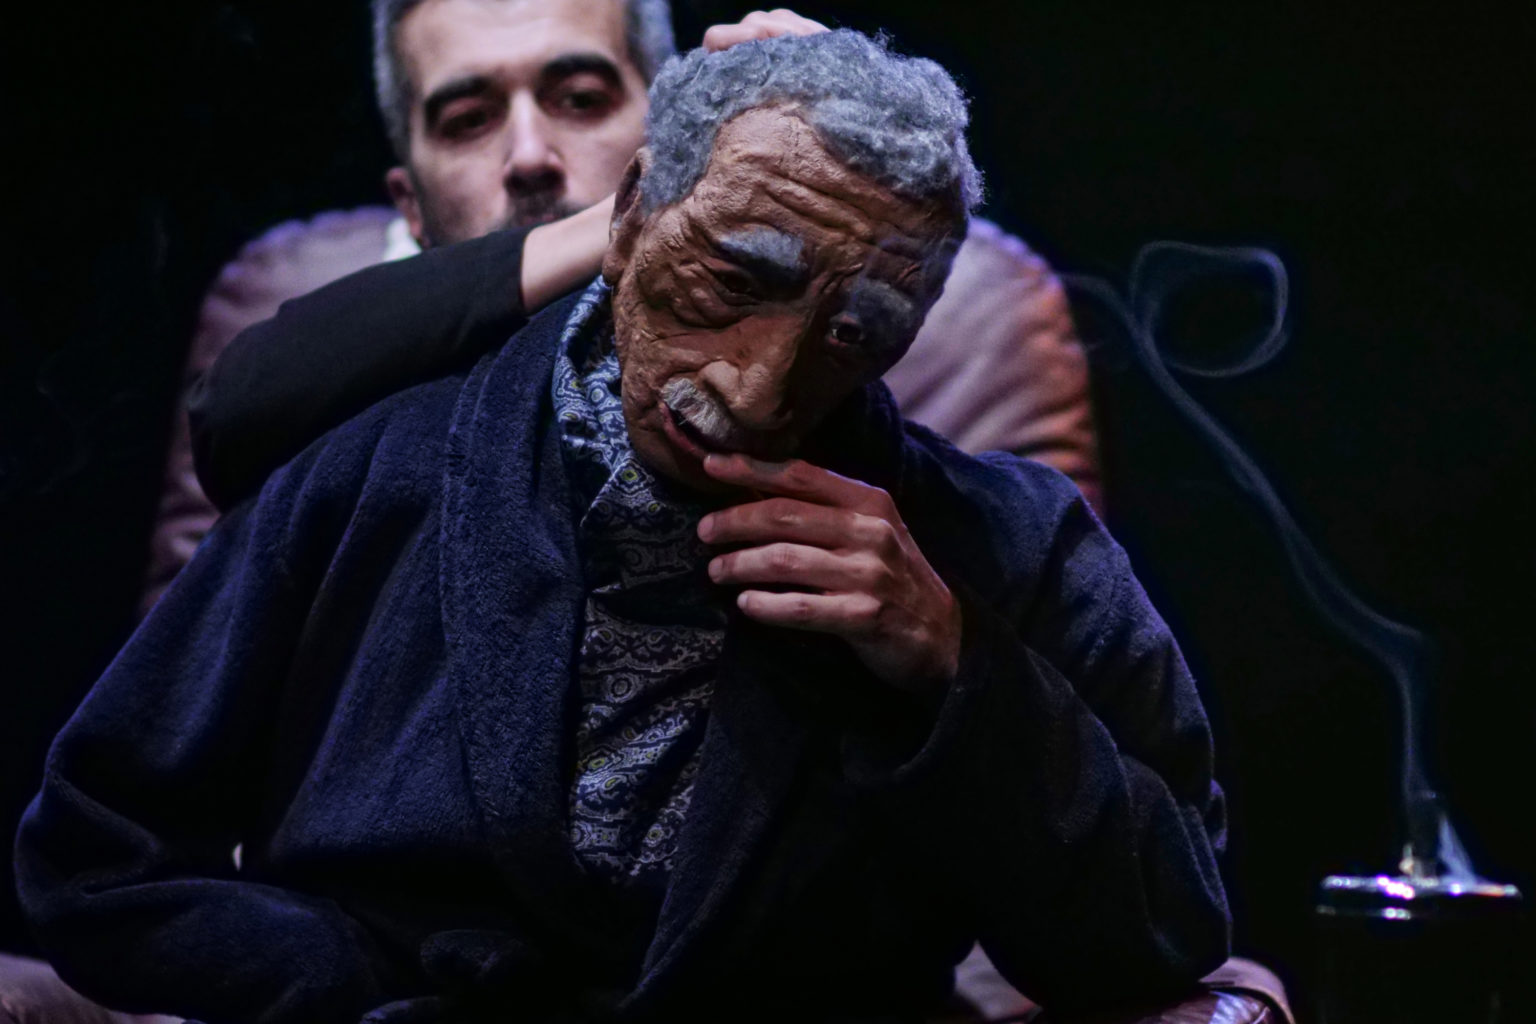 Photo du spectacle "Parti en fumée" où l'on voit le comédien Othmane Moumen manipuler la marionnette représentant son père.